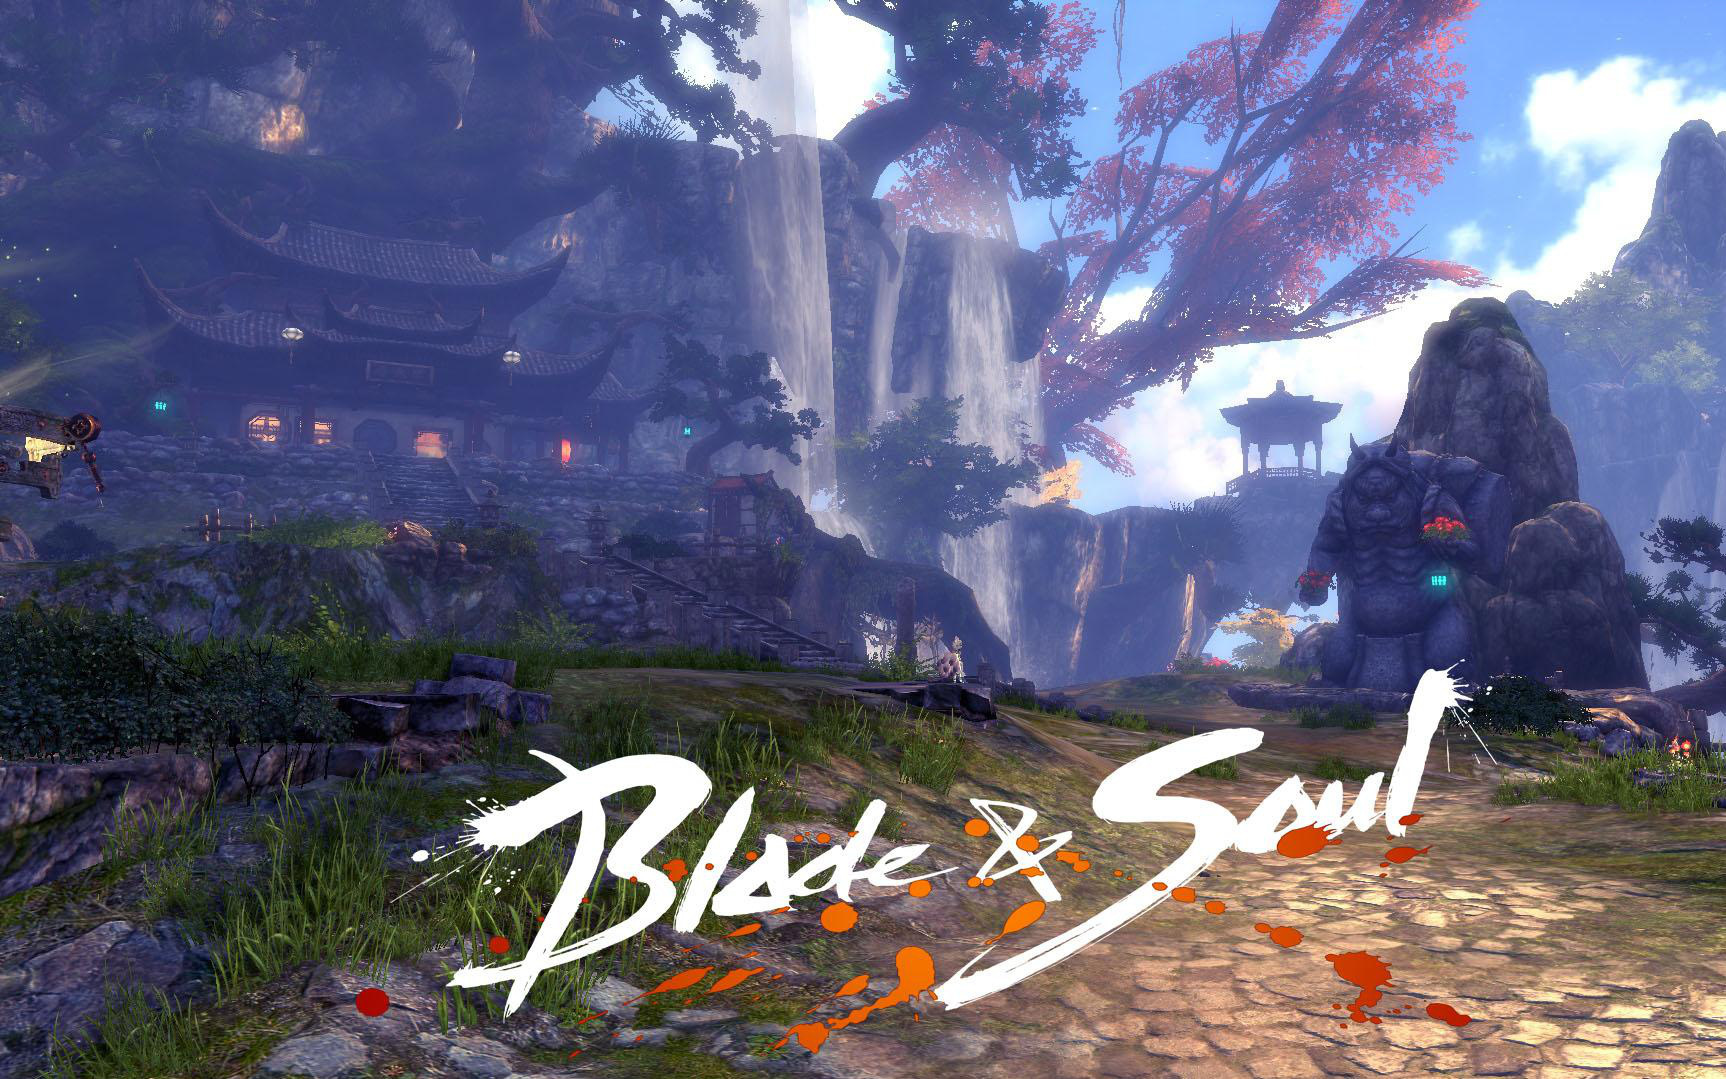 Hành trình phát triển của tuyệt phẩm làng game Blade & Soul trong 4 năm tại Việt Nam